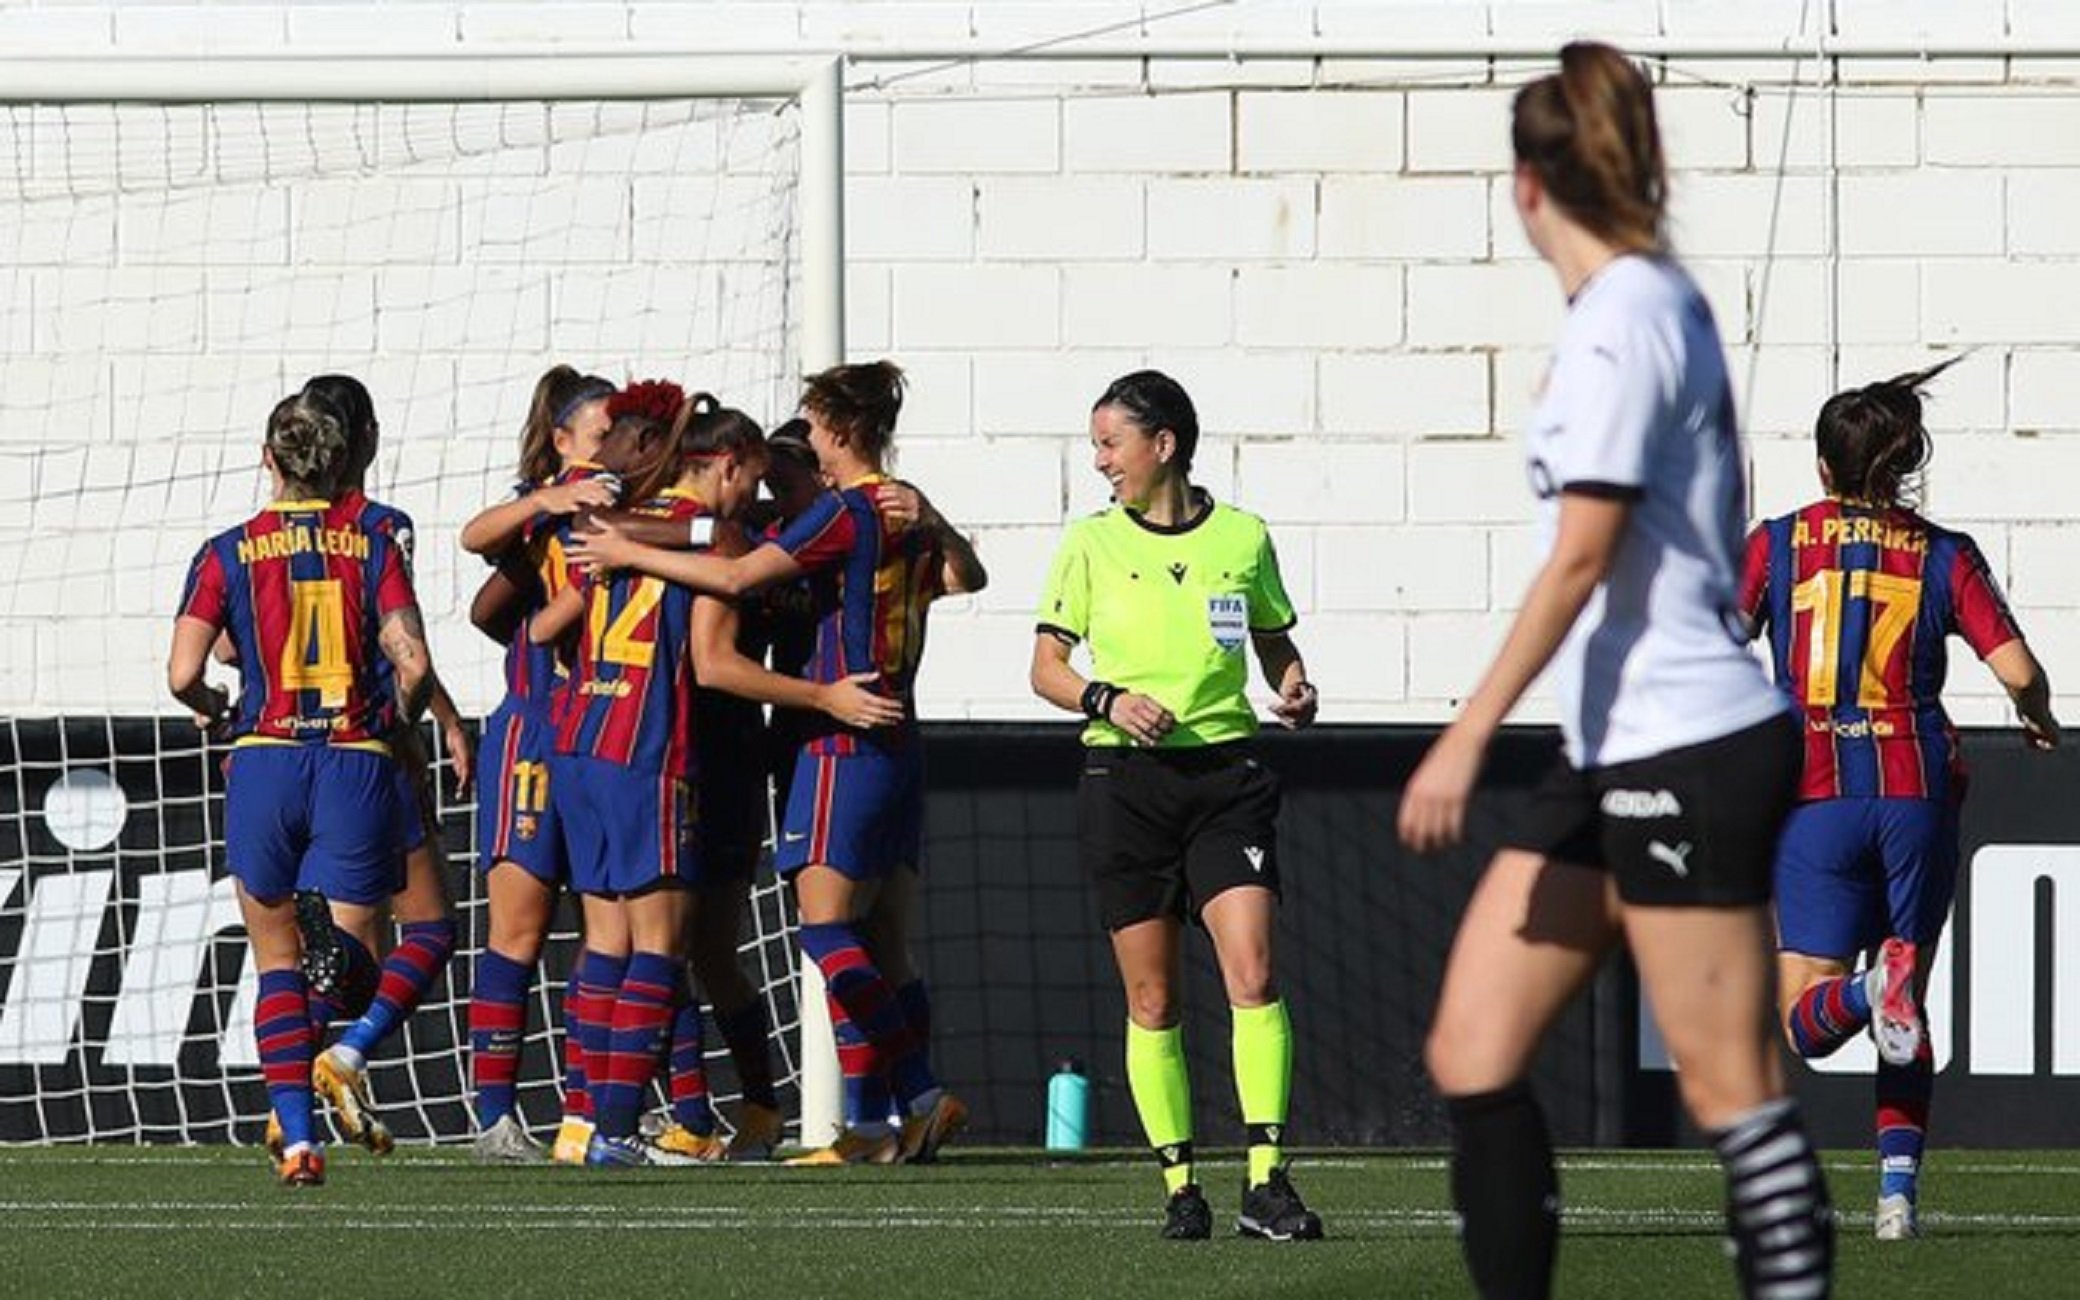 El Barça femení continua sent una piconadora: 0-7 al València